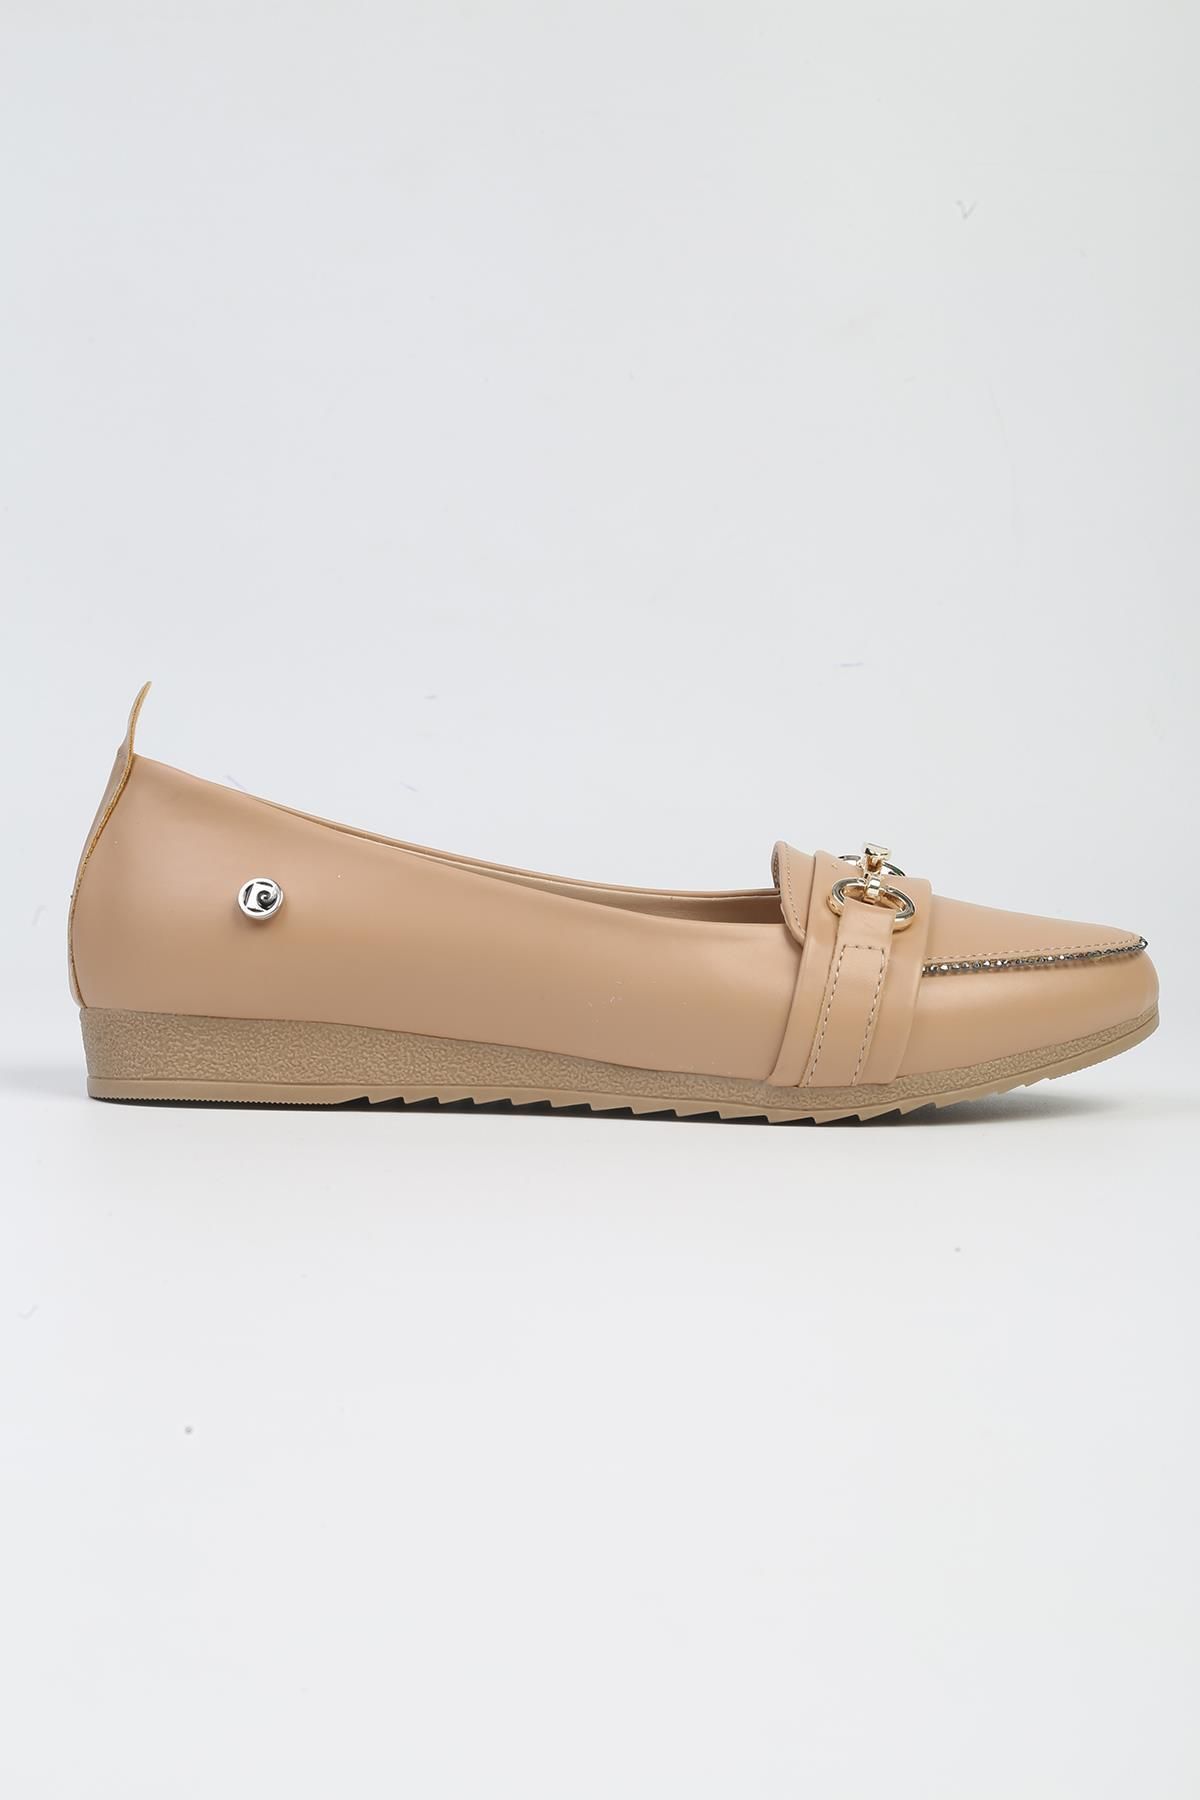 Pierre Cardin ® | PC-53016- 3962 Krem-Kadın Babet Günlük Ayakkabı